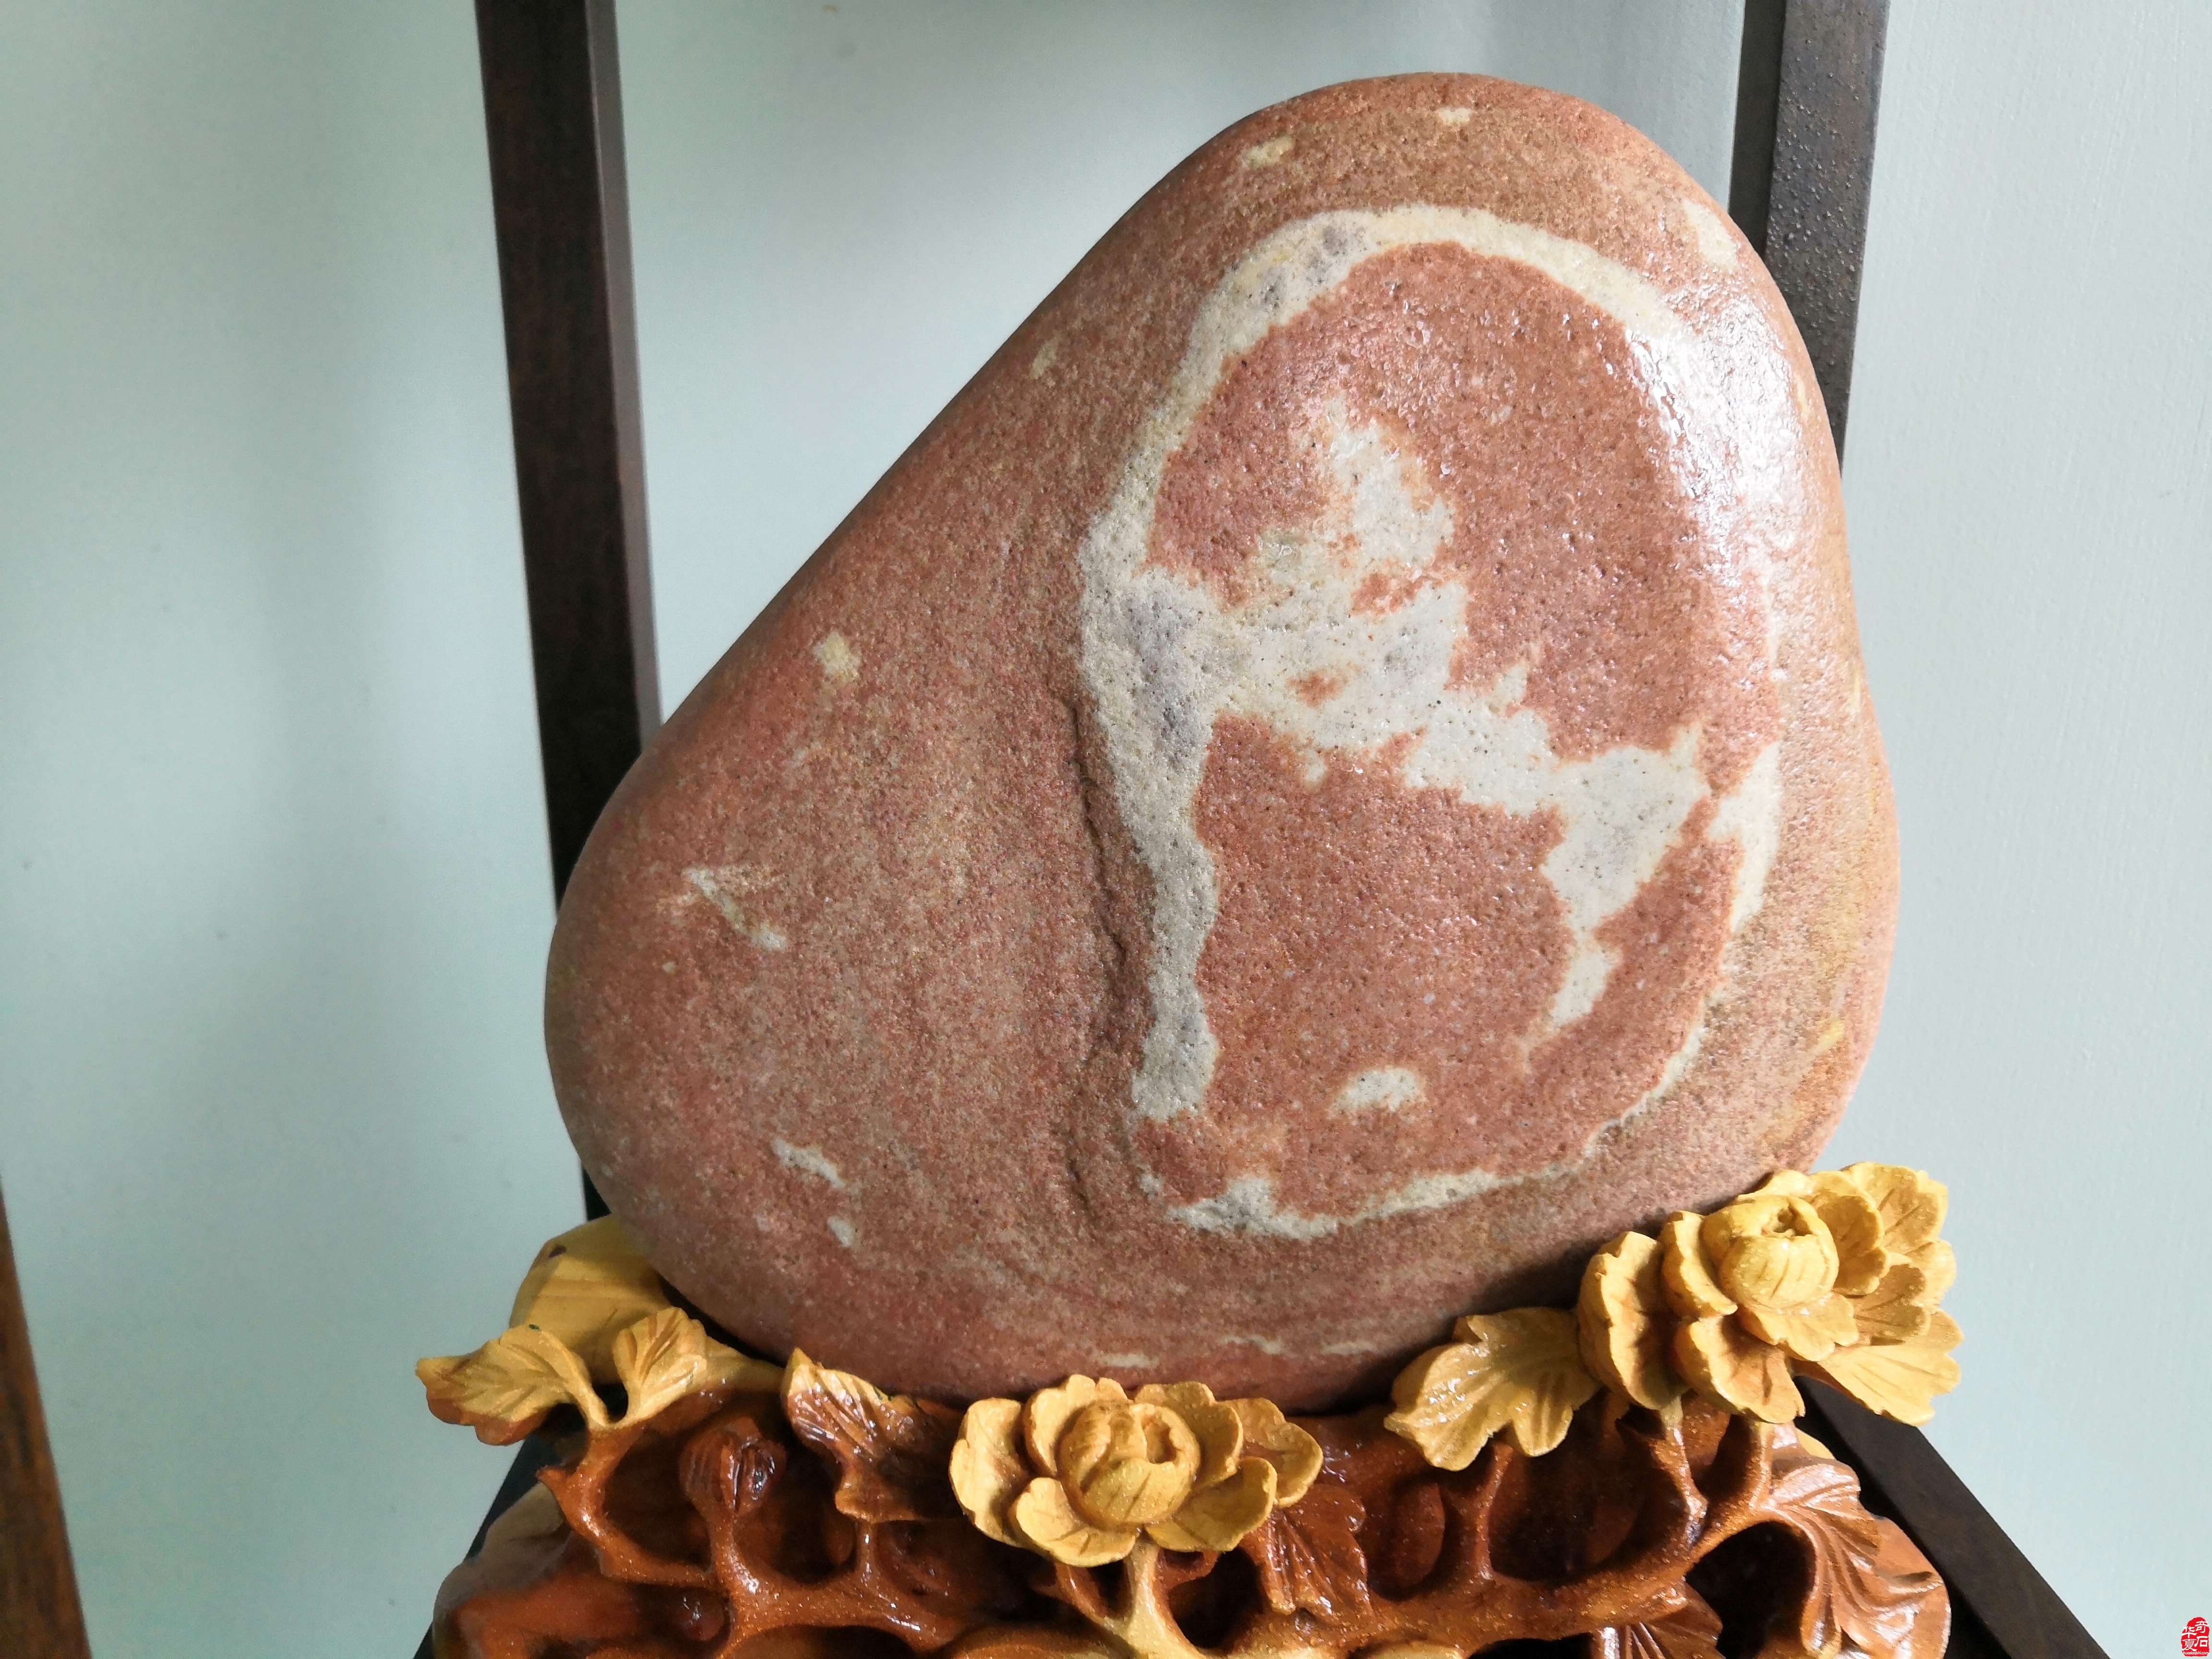 奇石是一种“雅俗共赏”的艺术 对吗？